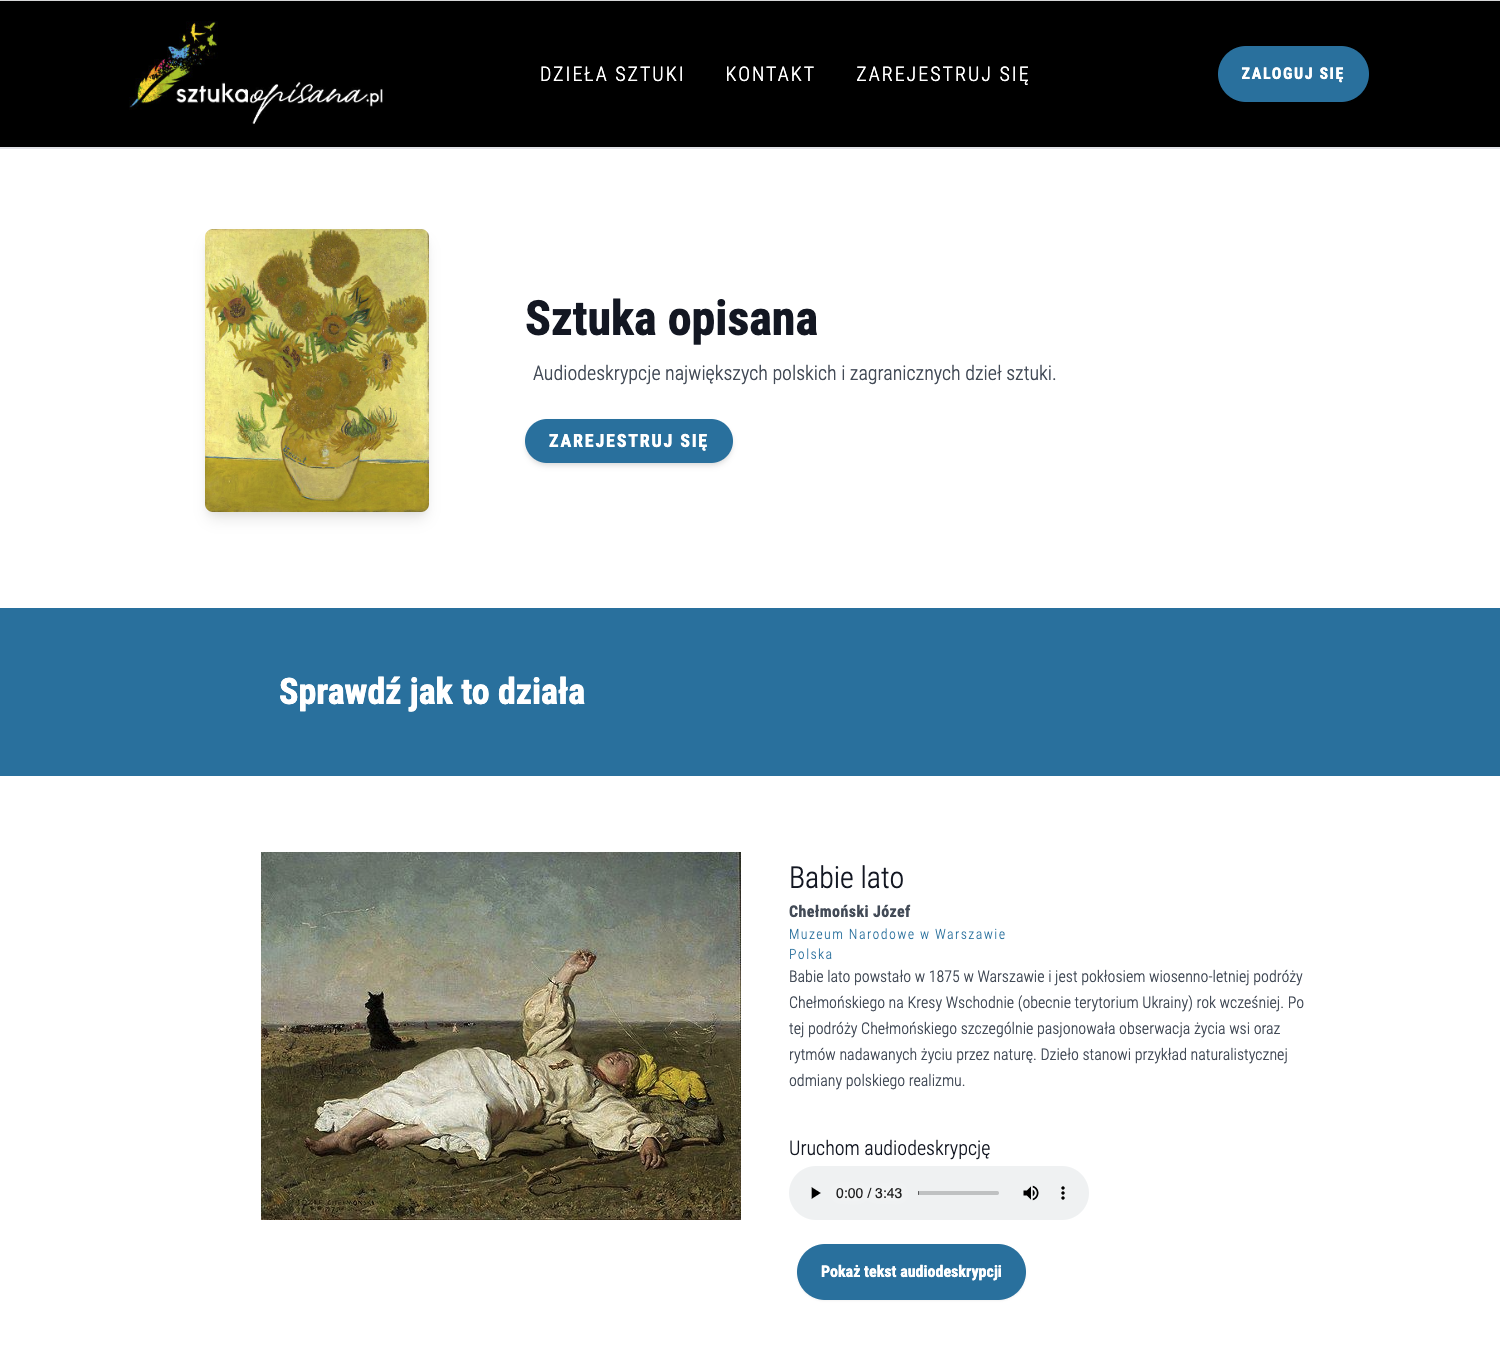 Zrzut ekranu - strona główna serwisu sztukaopisana.pl